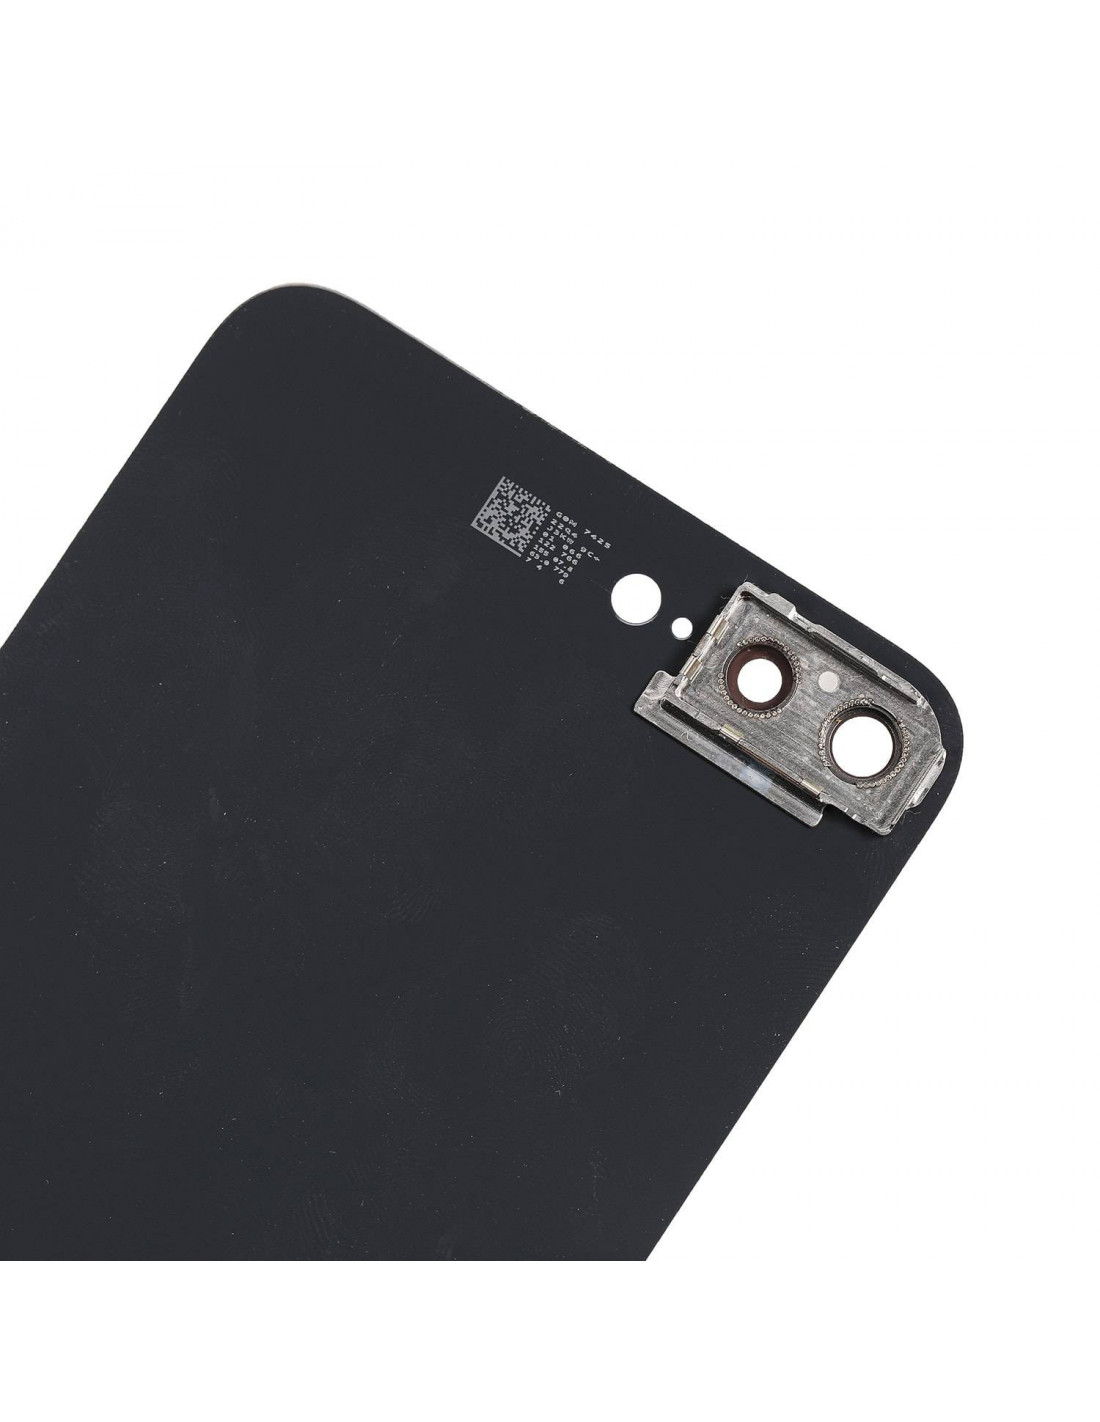 Carcasa Chasis Tapa Bateria iPhone 8 Plus Negro